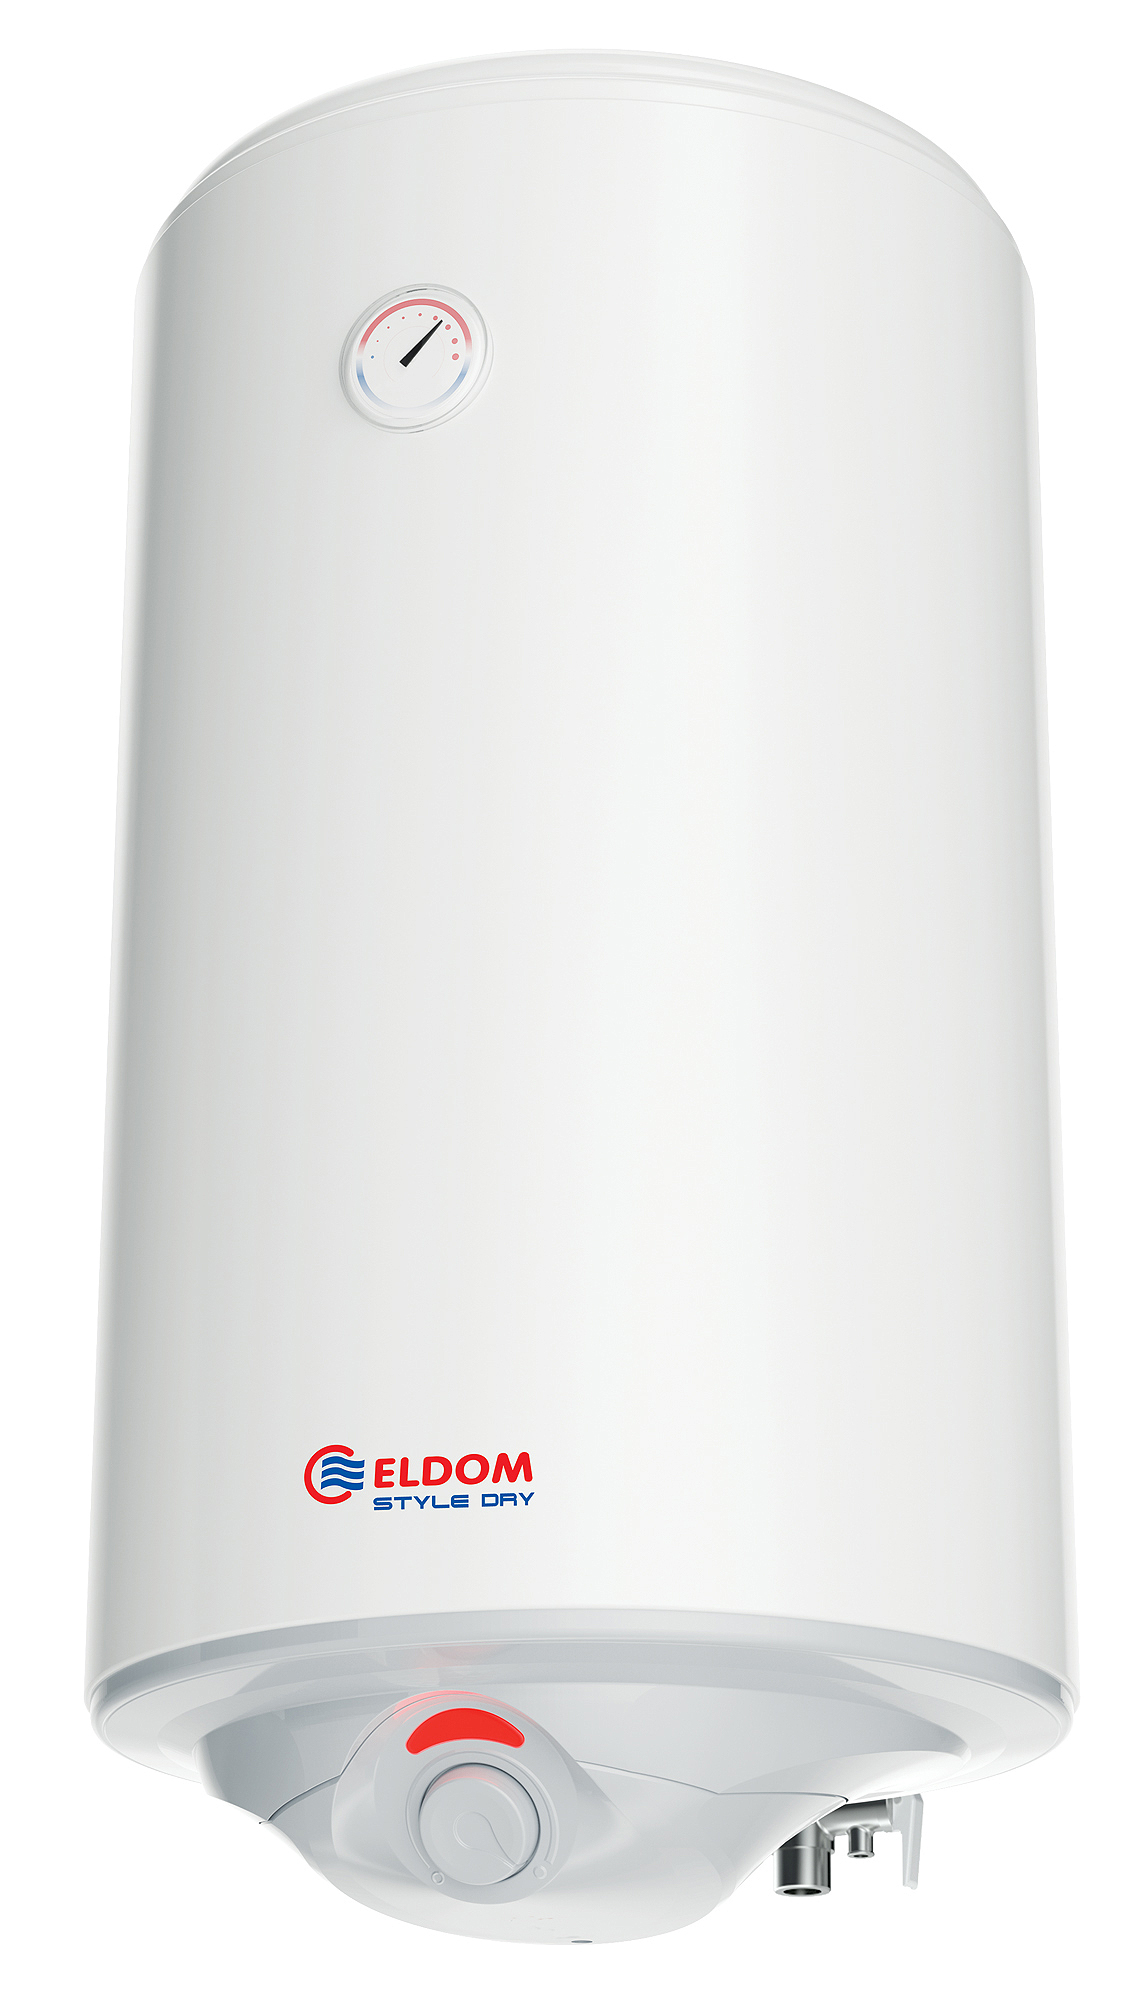 B-Ware Warmwasserspeicher Eldom Style Dry 100 Liter druckfest